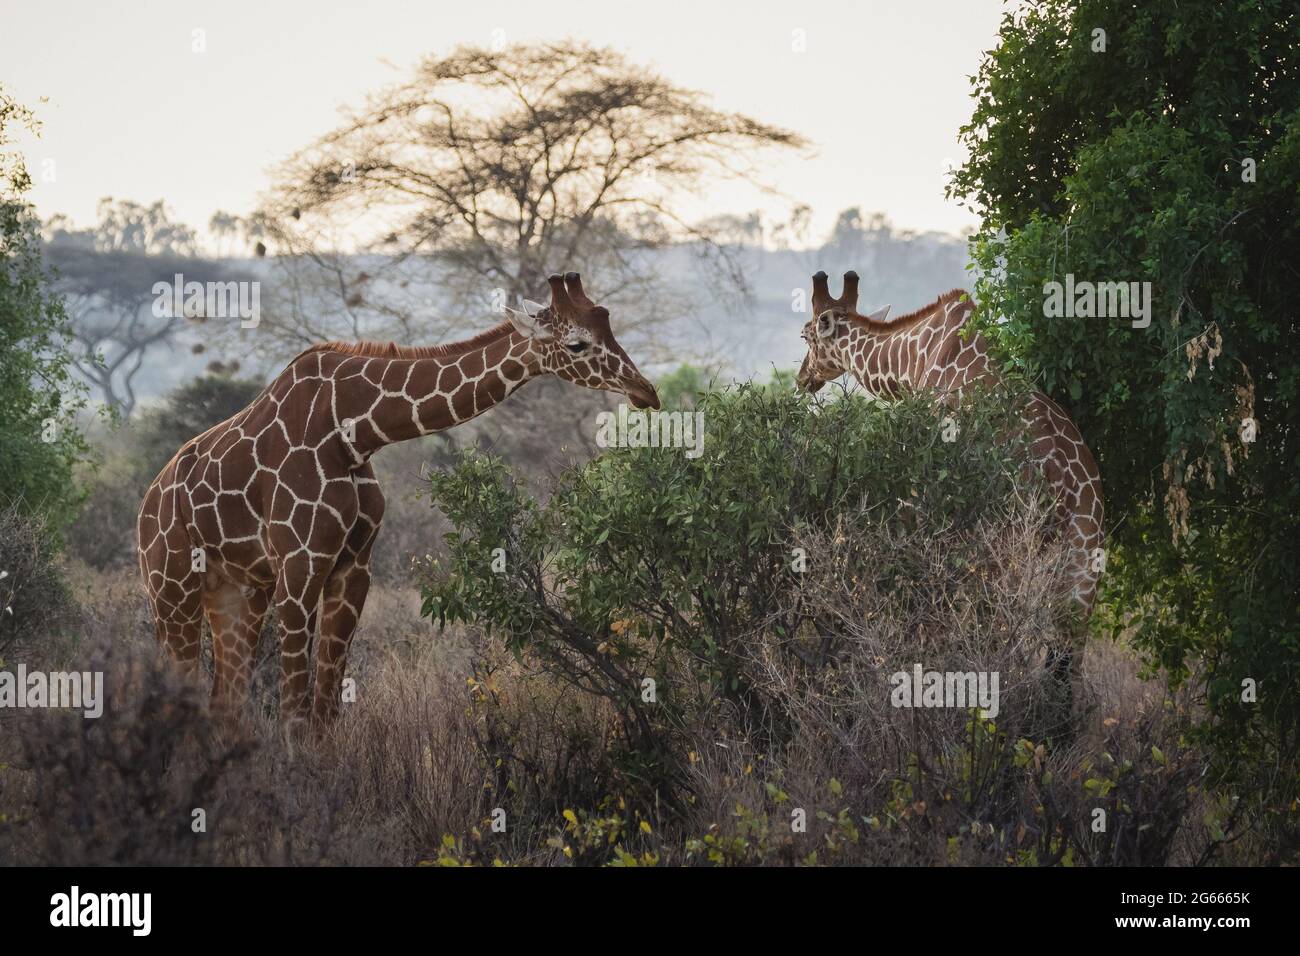 Animals in the wild - Reticulated giraffe - Samburu National Reserve, North Kenya Stock Photo